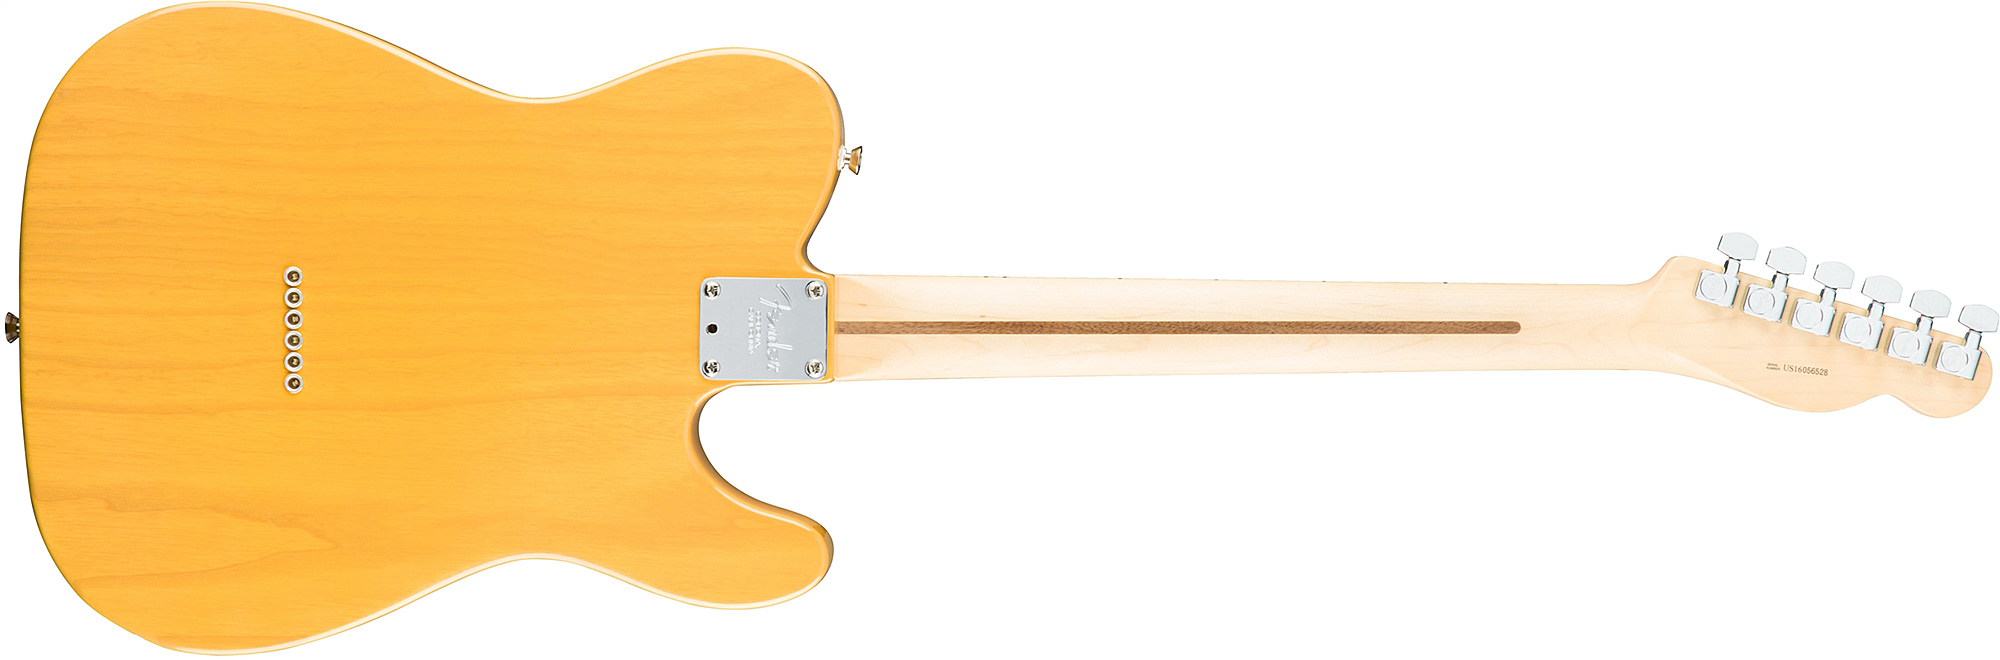 Fender Tele American Professional Lh Usa Gaucher 2s Mn - Butterscotch Blonde - Linkshandige elektrische gitaar - Variation 1